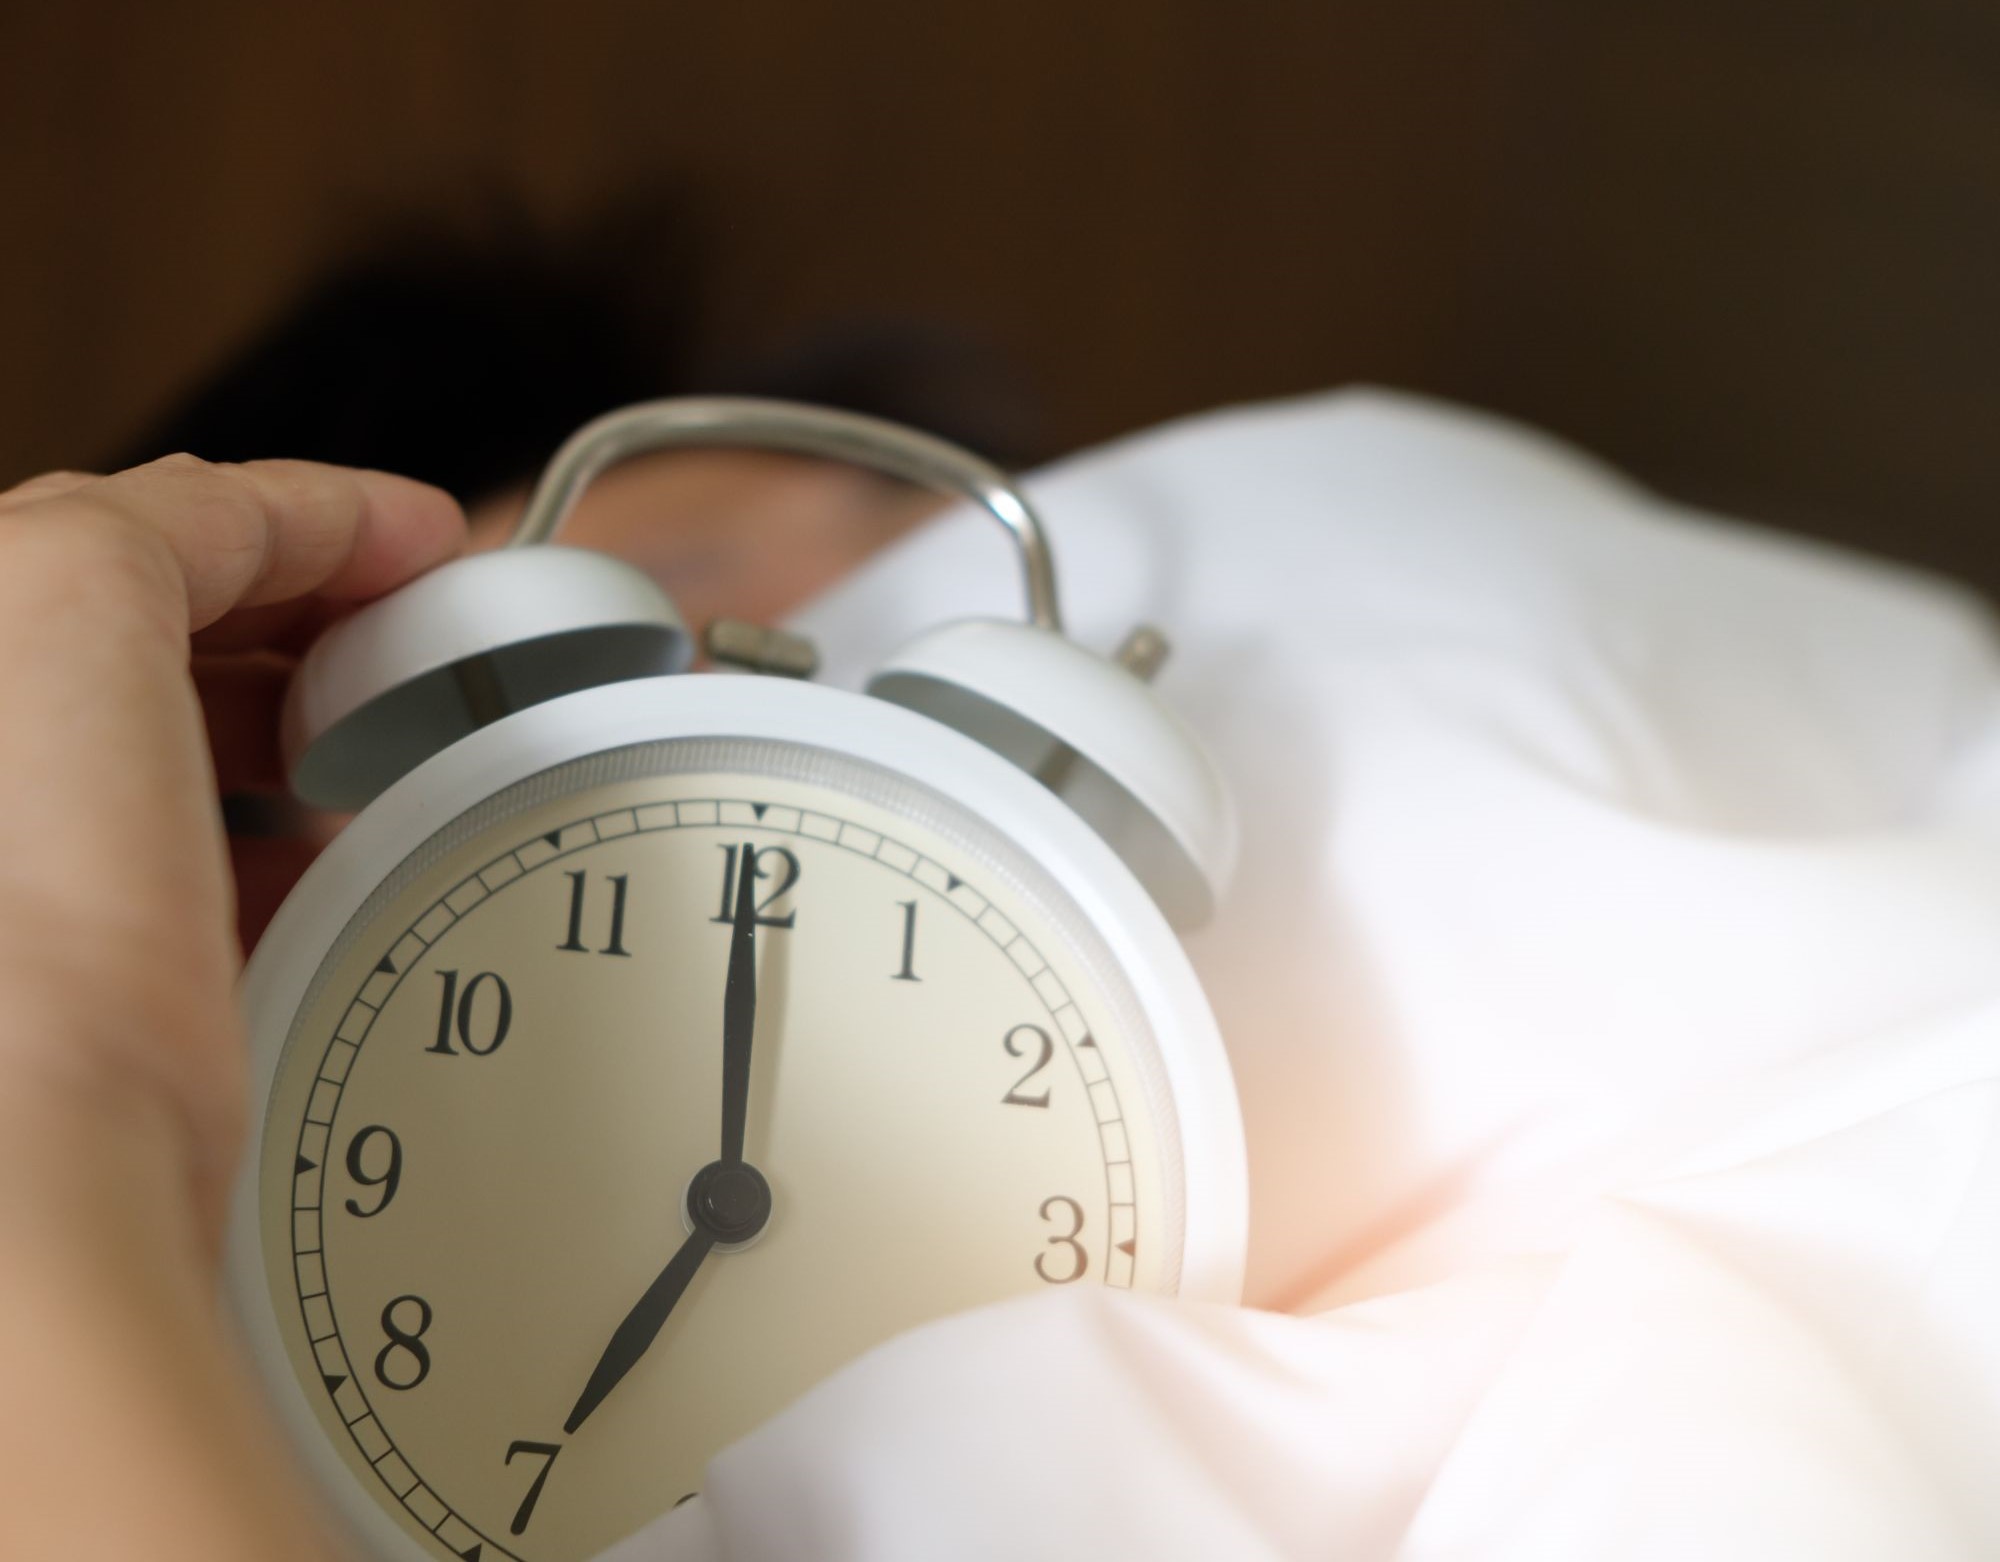 Kamu Perlu Tahu! Tidur Berlebihan Tidak Dianjurkan Karena Hal Ini, Cek Risiko dan Penyebabnya di Sini